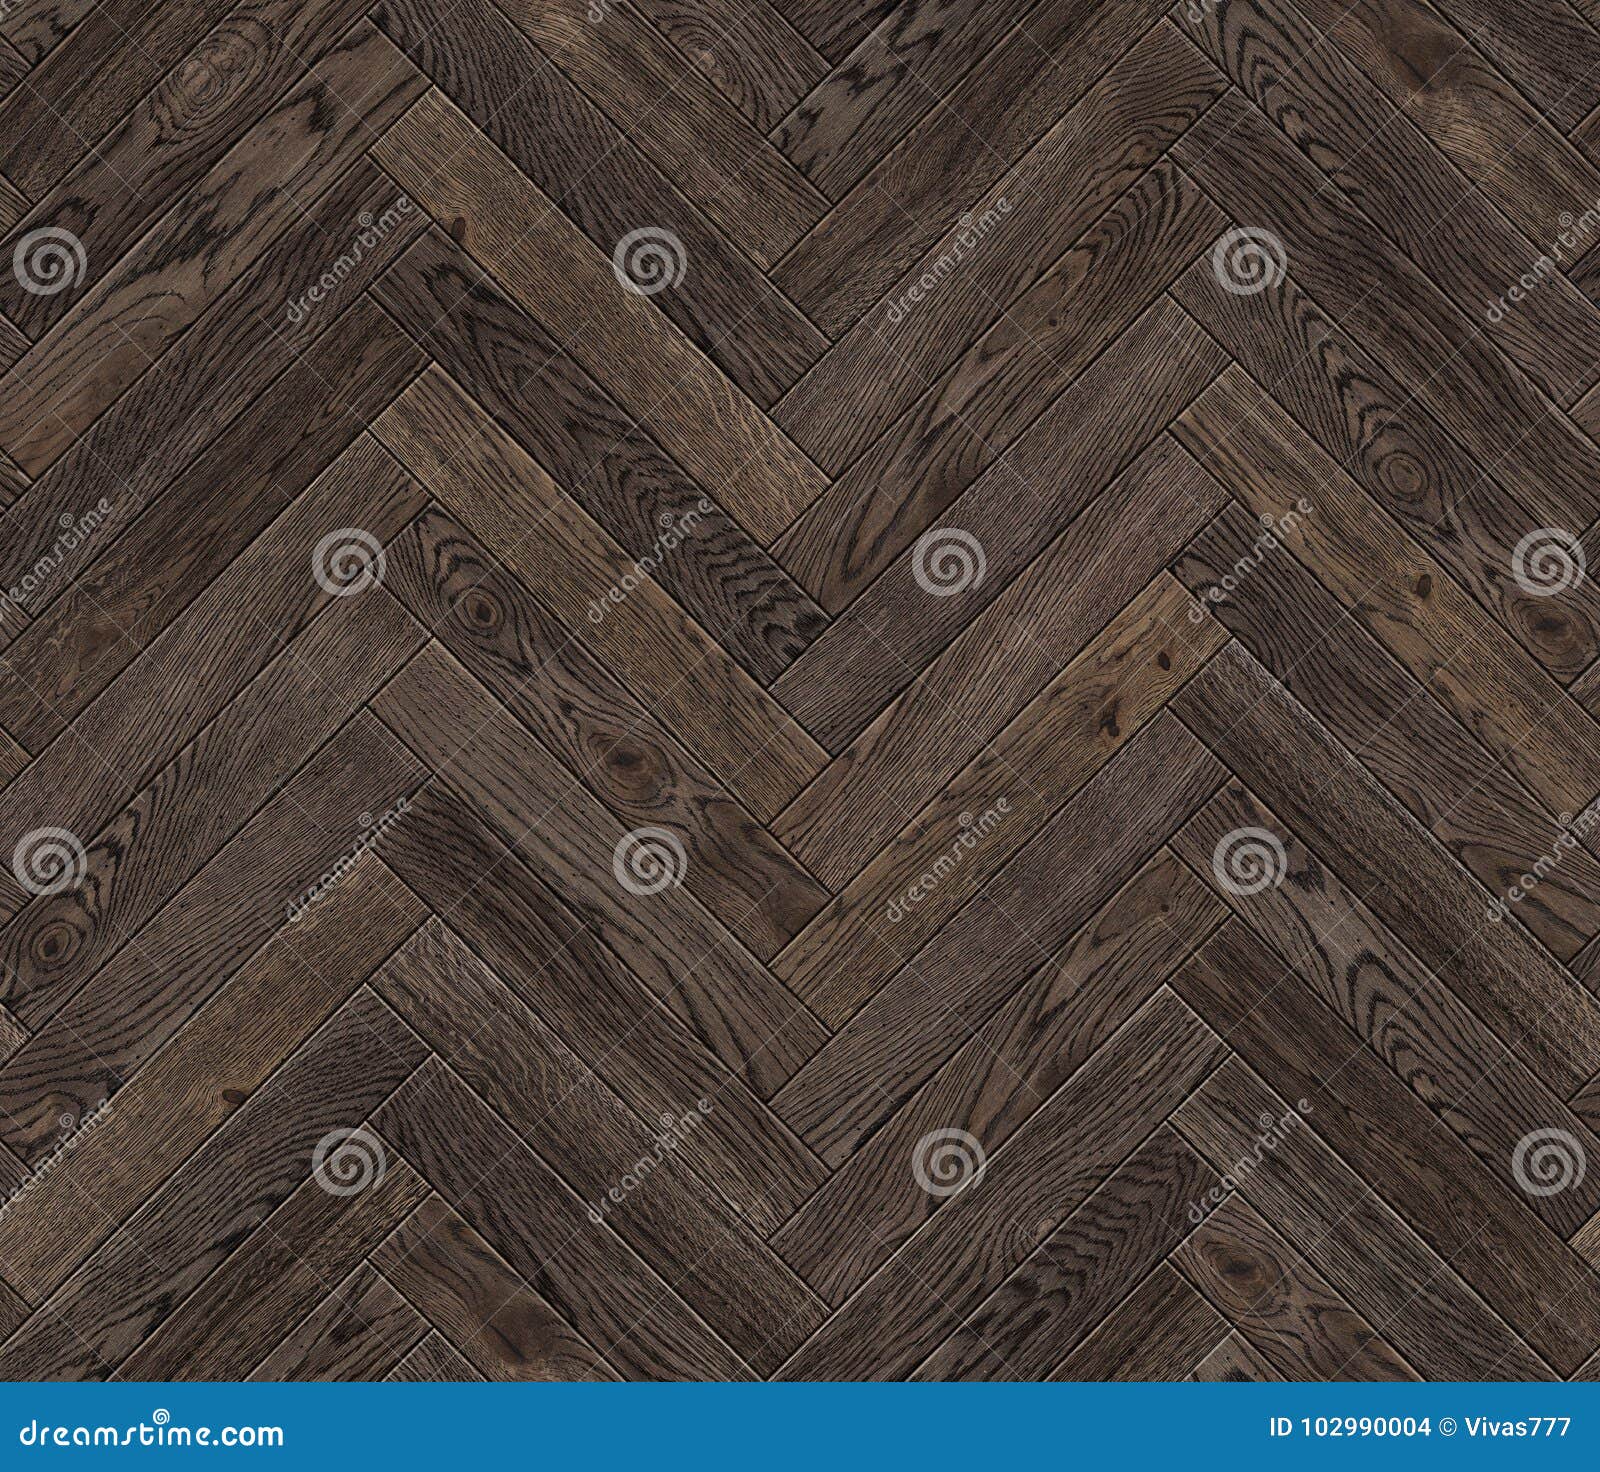 Natural Wooden Background Herringbone Grunge Parquet Flooring